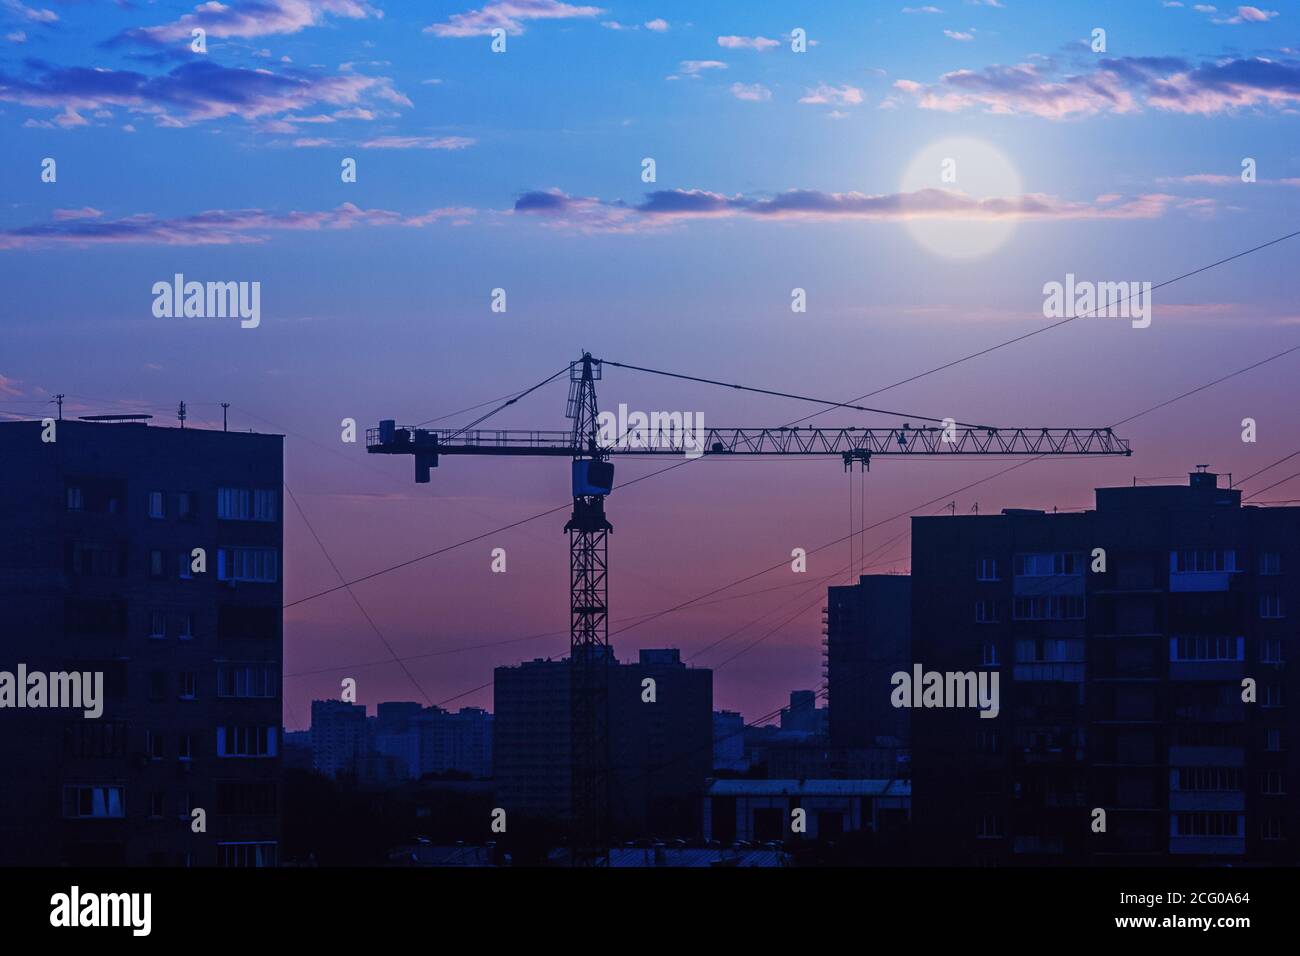 Bau Kran Silhouette gegen Stadt Skyline, Vollmond über Nacht Stadt Stockfoto